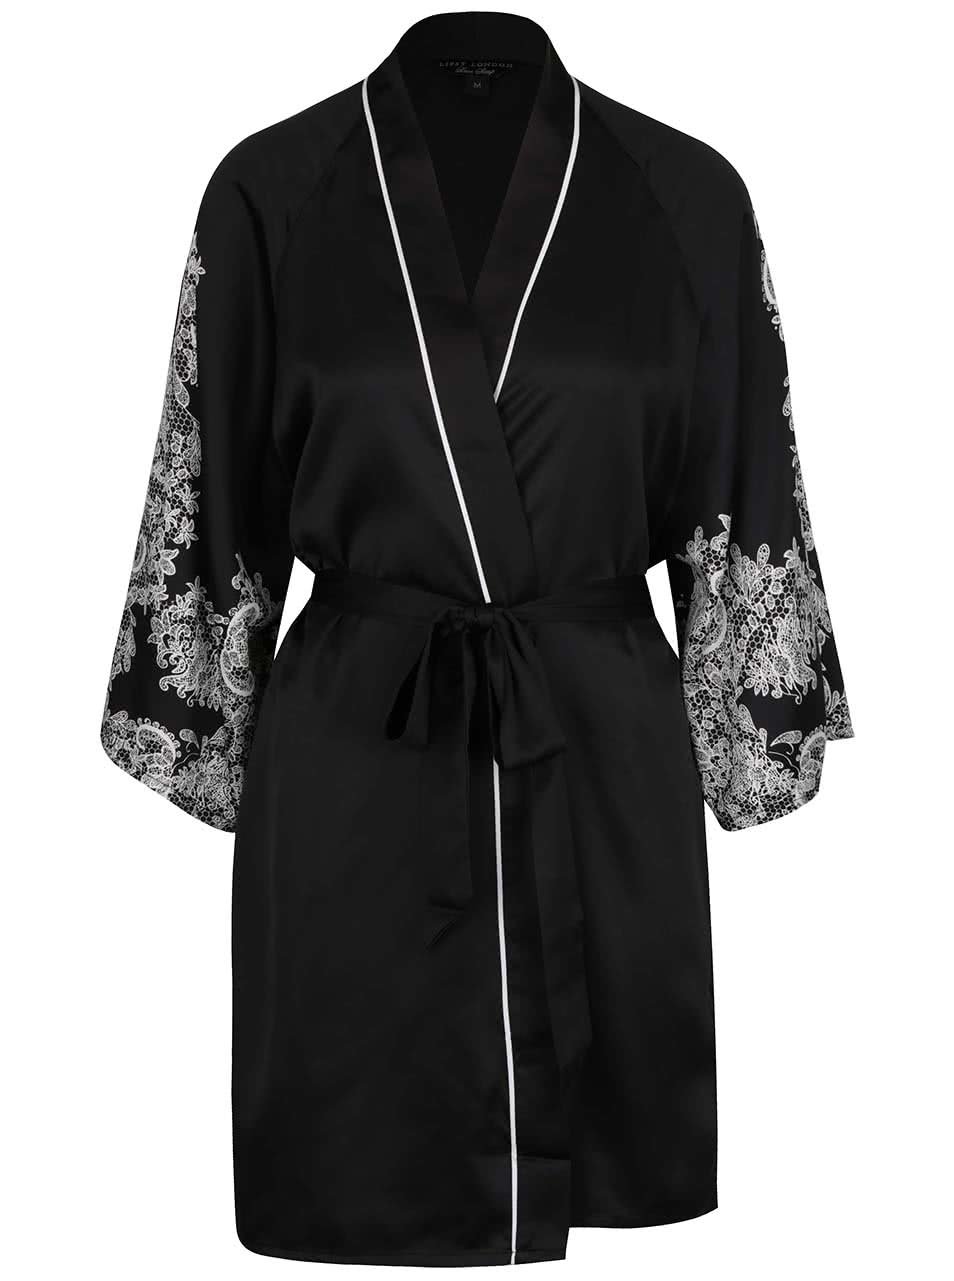 Černo-bílé kimono s potiskem krajky Lipsy